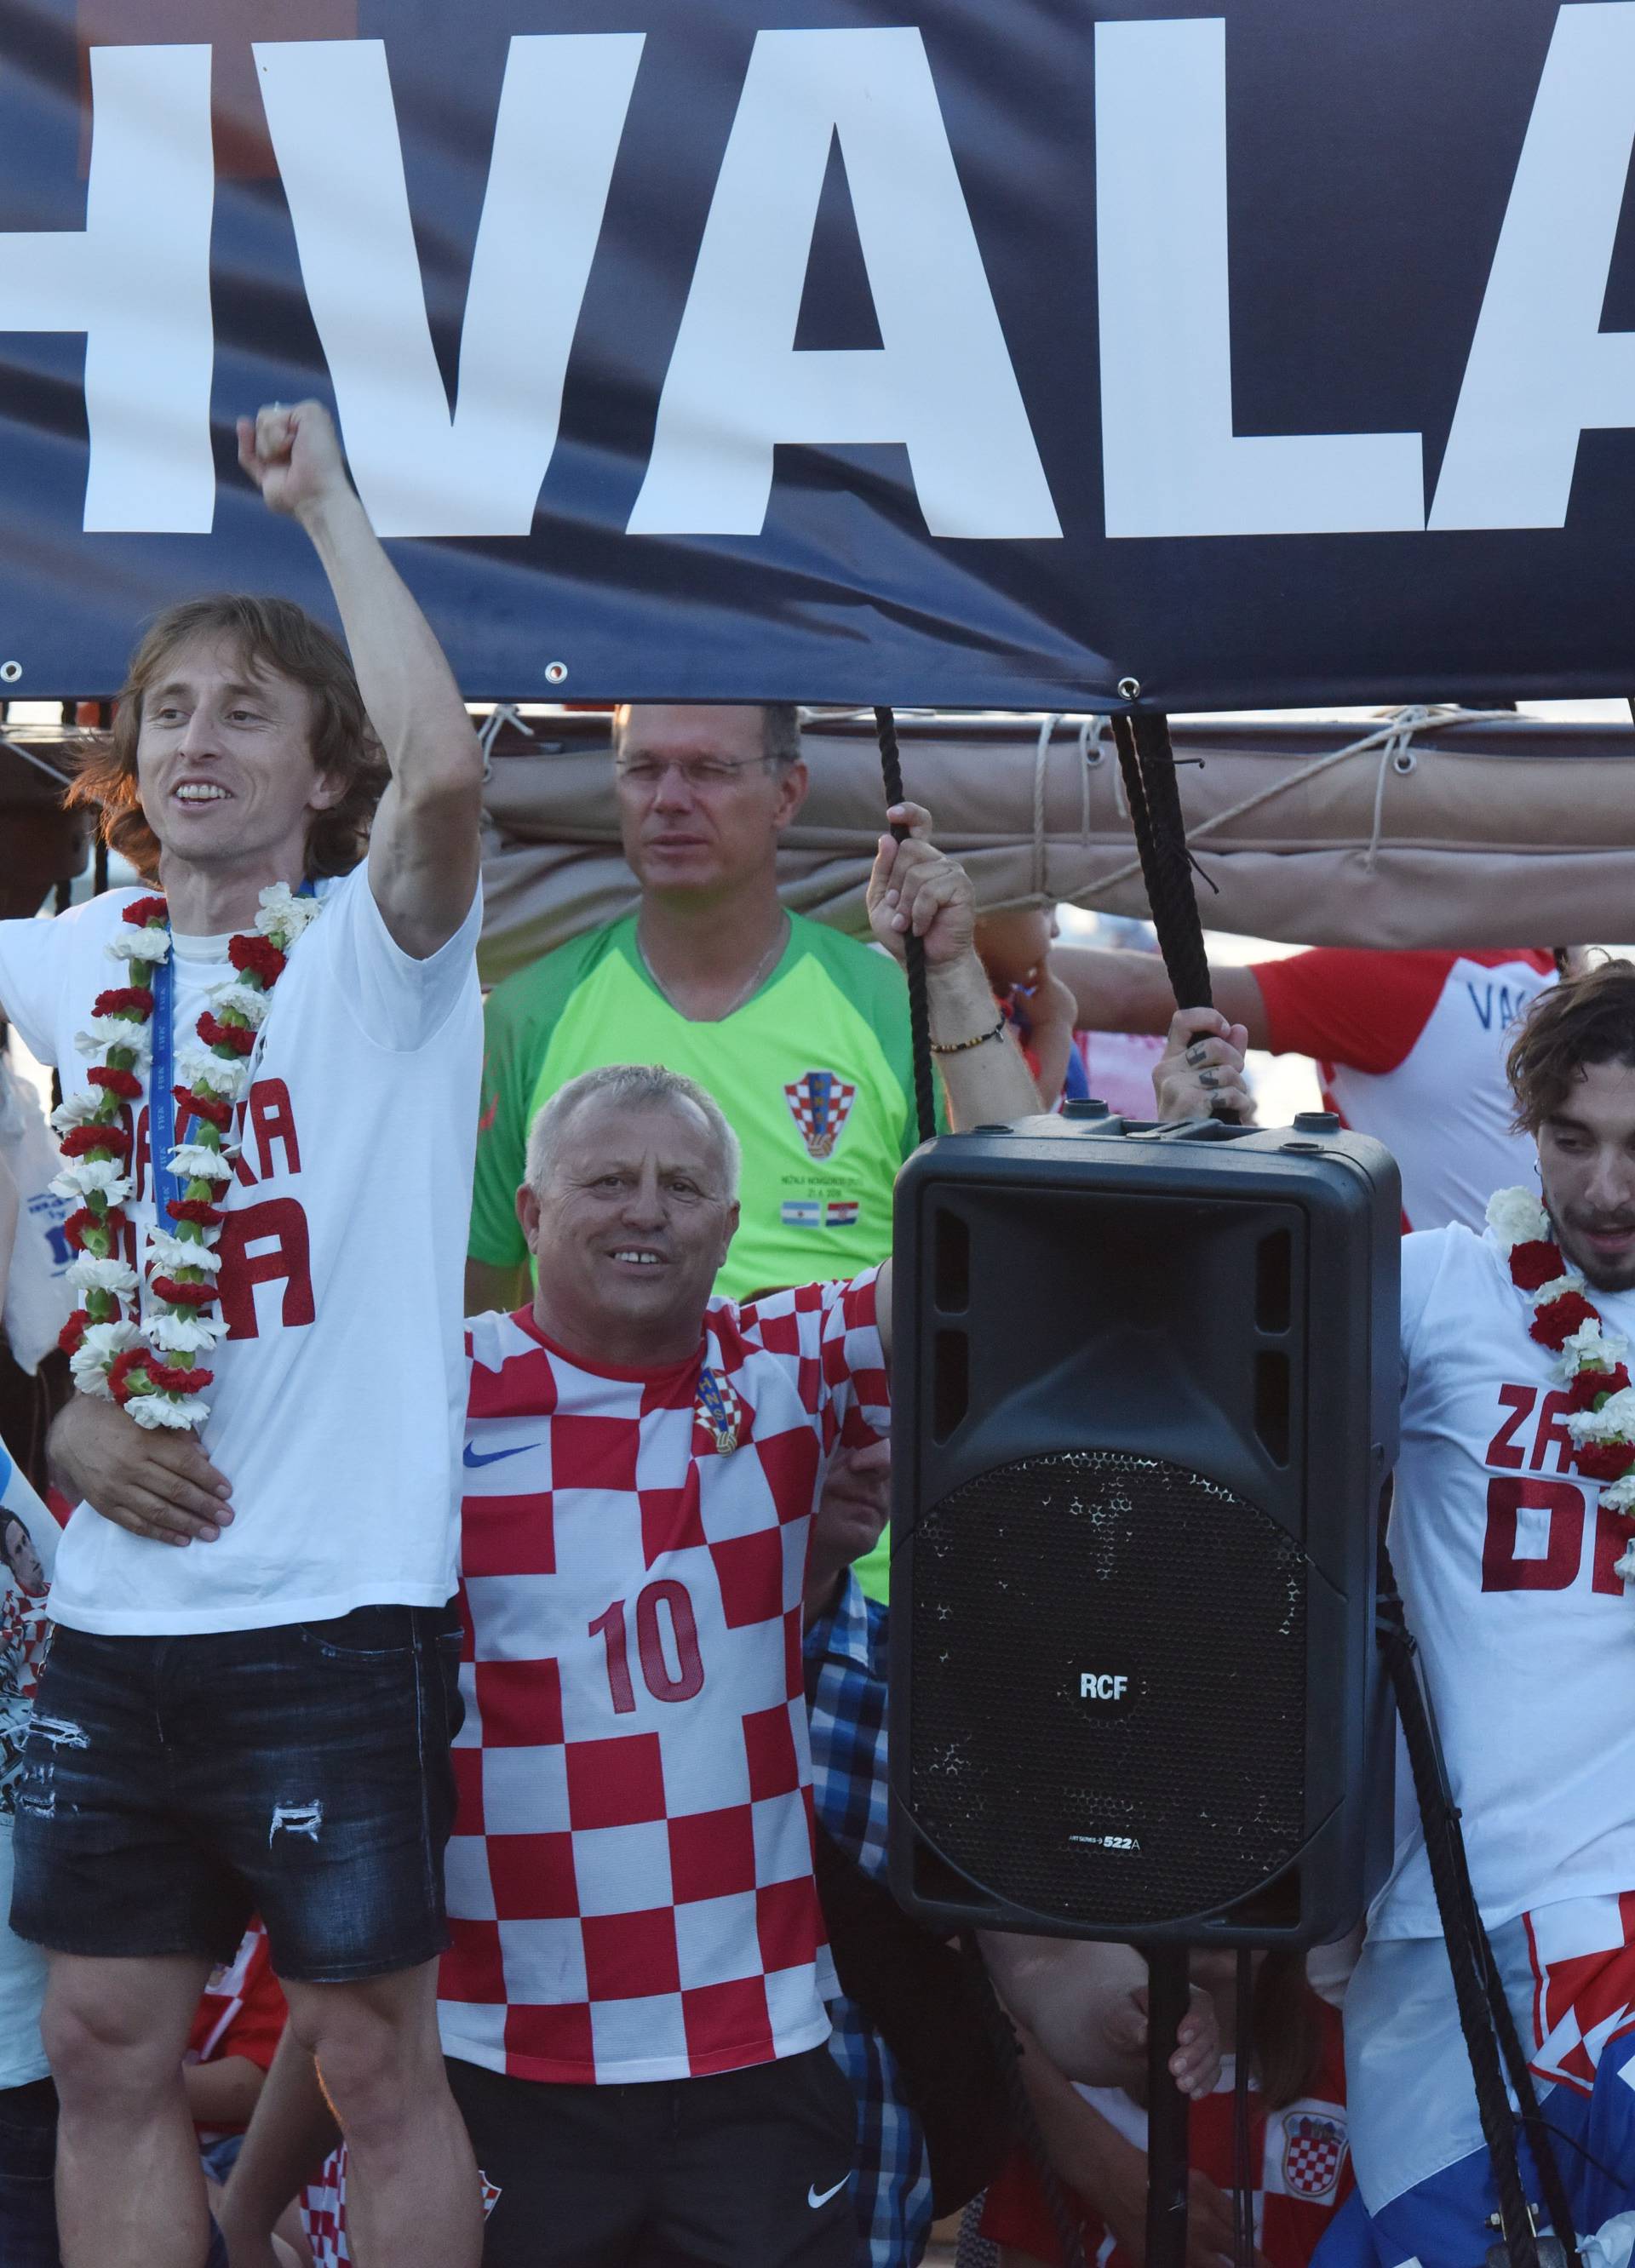 Kakva ludnica: Modrić, Vrsaljko i ekipa pjevali sa Zadranima...